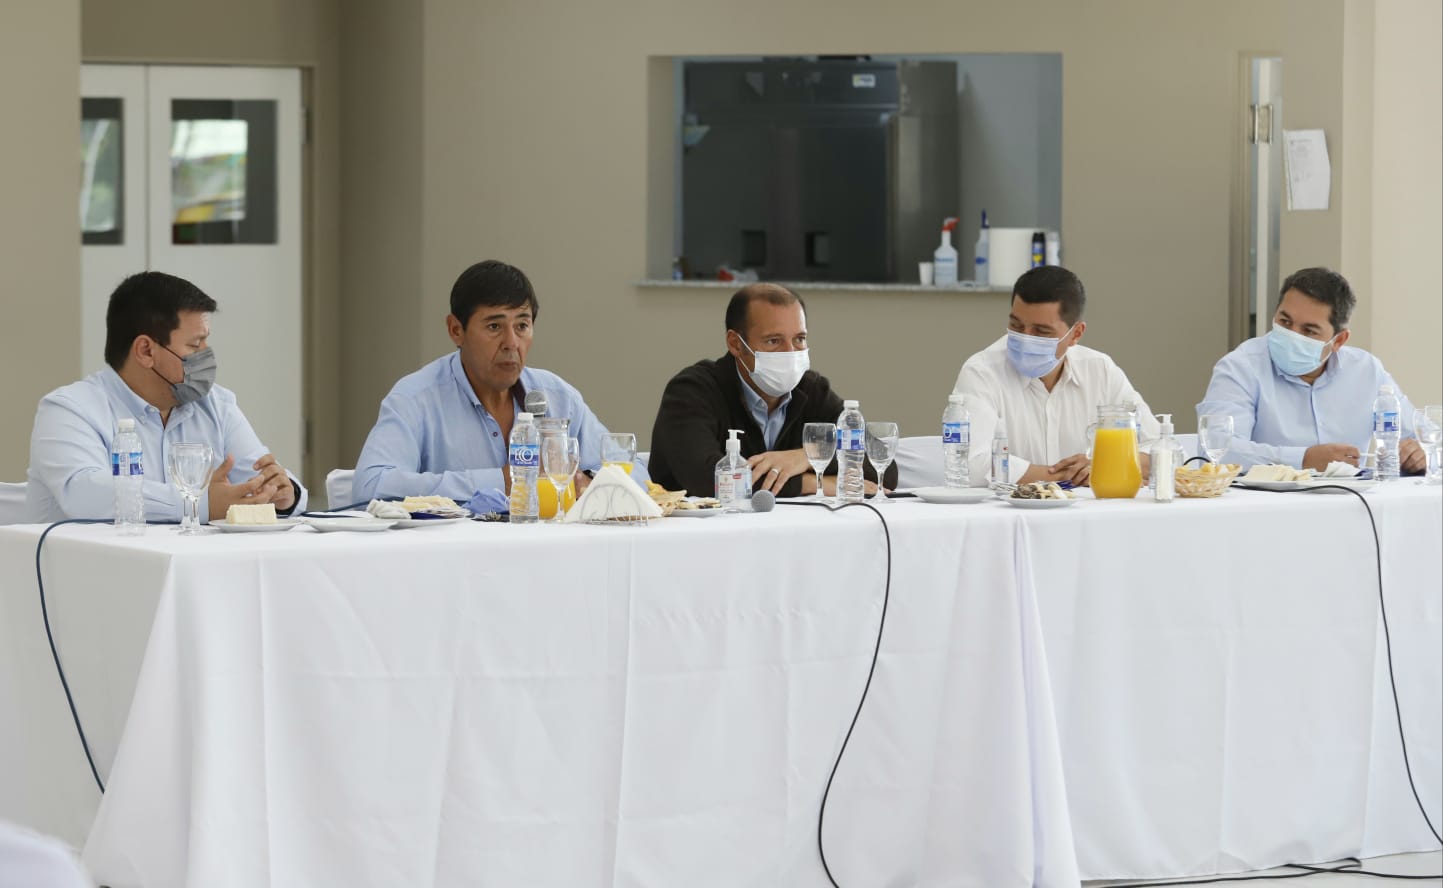 El encuentro se realizó hoy en Centenario y contó con la participación de funcionarios, legisladores de diversos partidos políticos y empresarios locales. (Foto: gentileza)